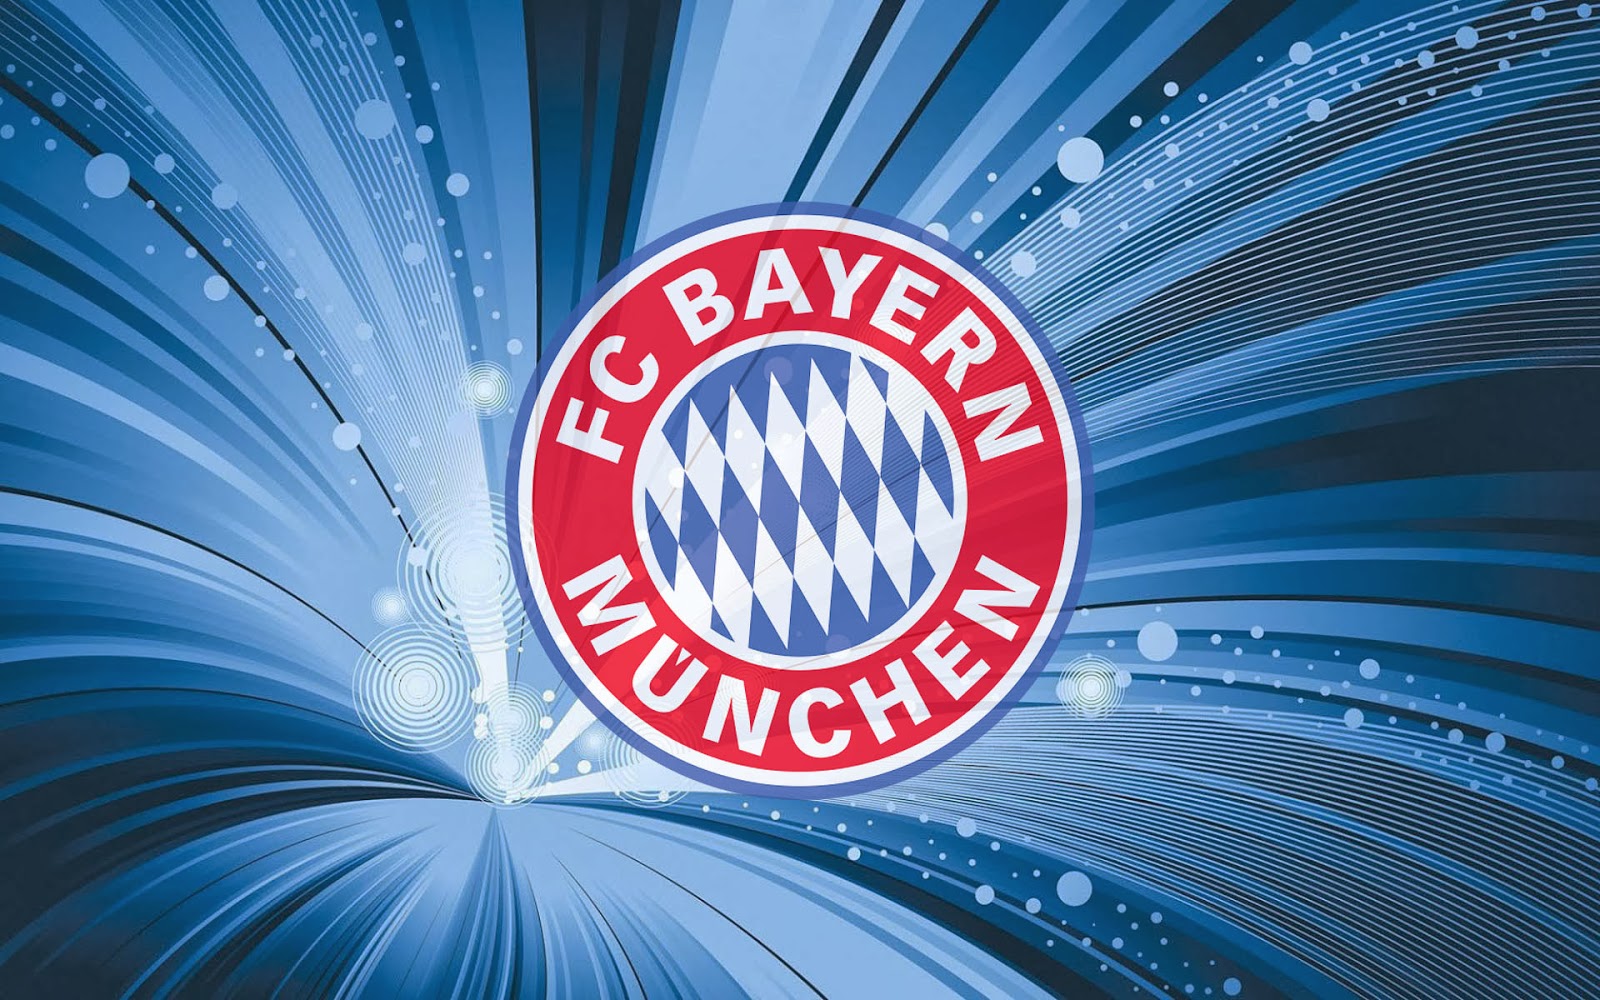 FC Bayern Munchen Wallpaper High Resolution #8159 Wallpaper ...